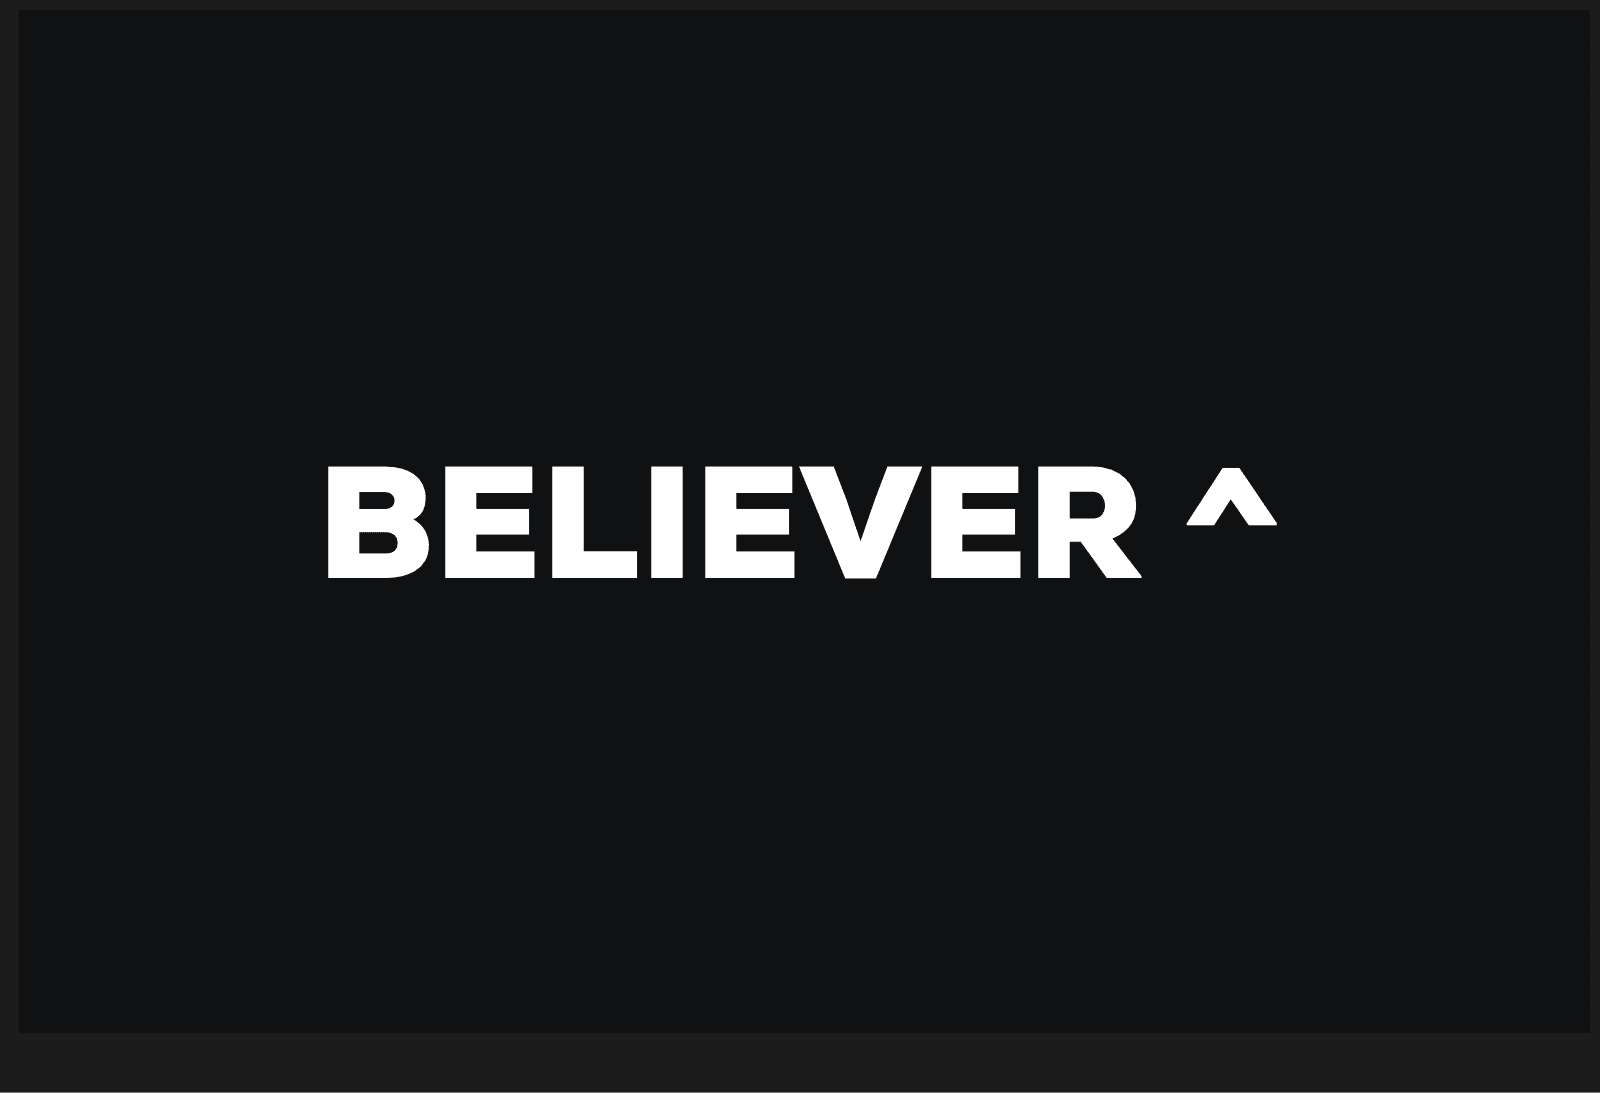 Believer^